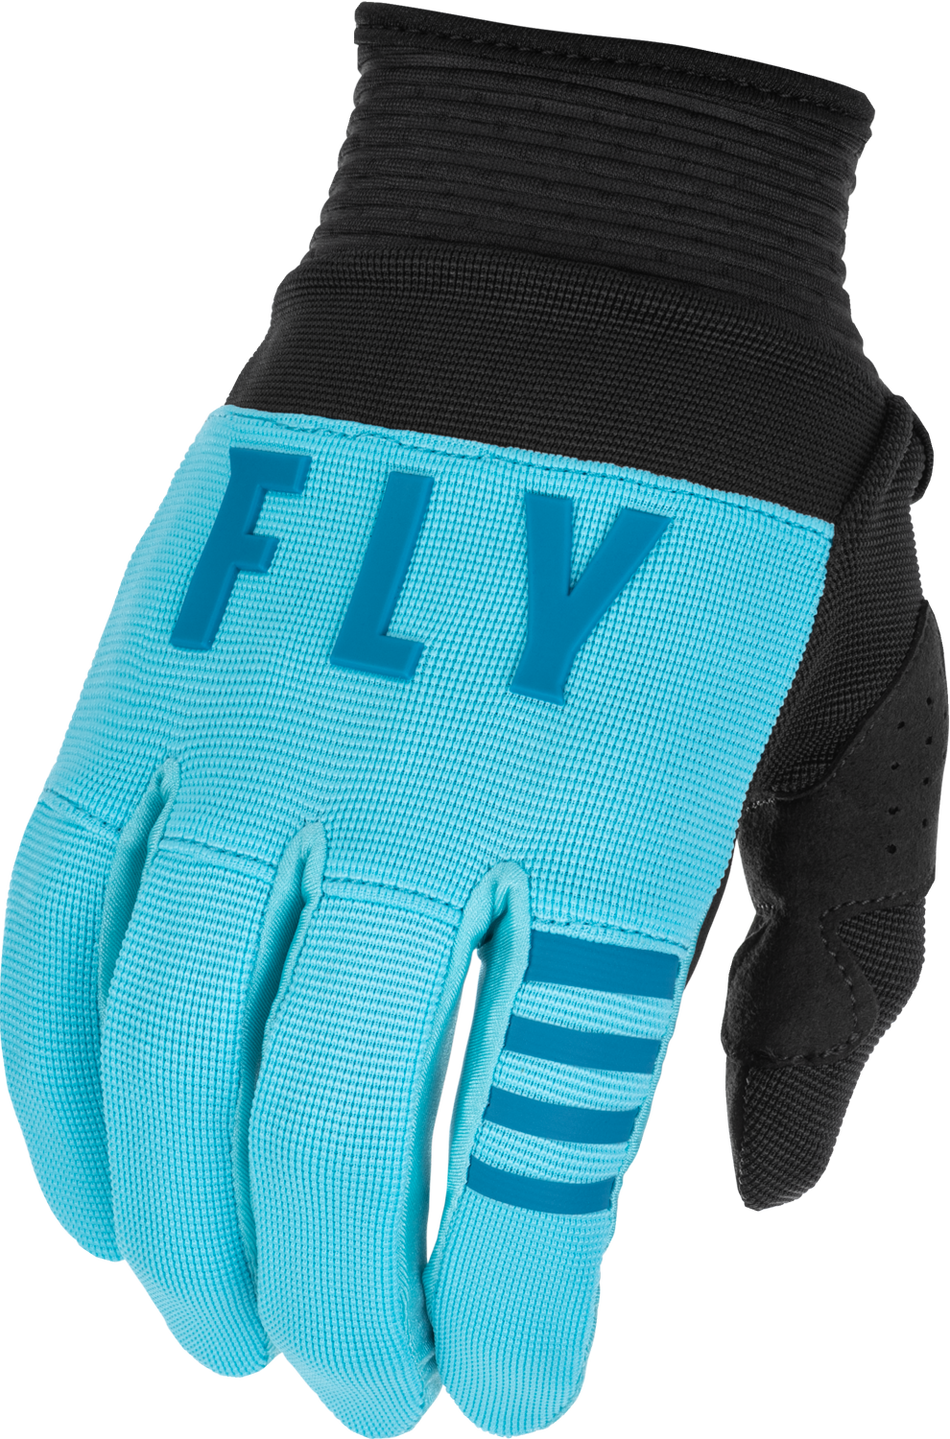 FLY RACING Youth F-16 Gloves Aqua/Dark Teal/Black Ys 375-810YS